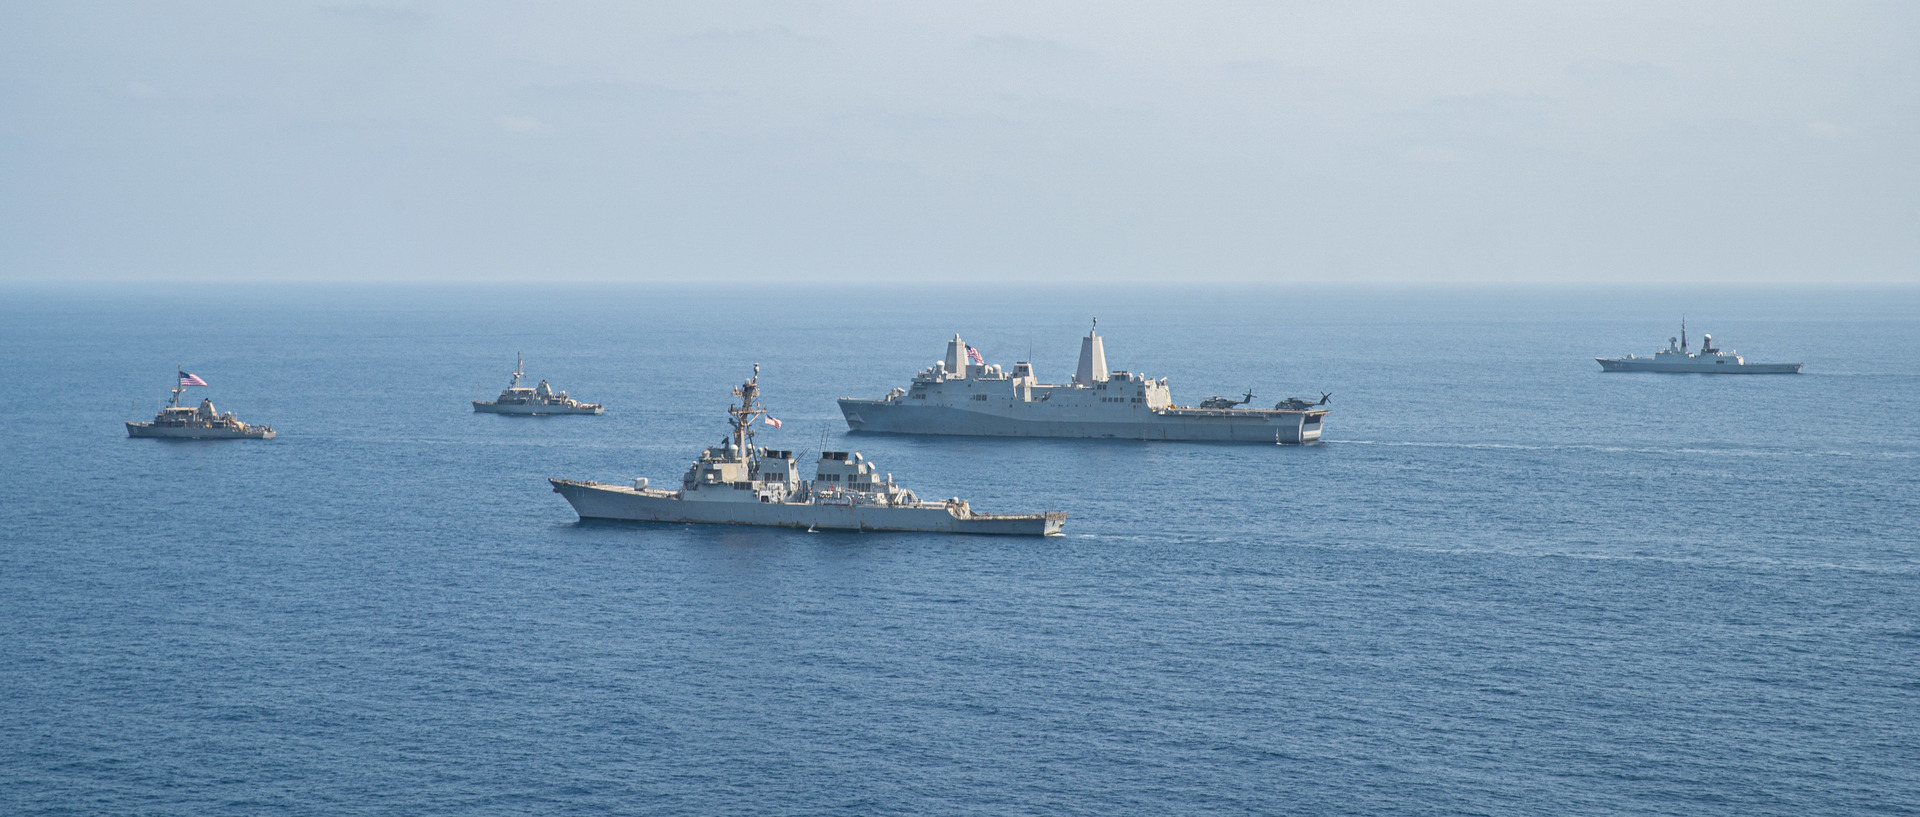 هيئة بحرية بريطانية: سفينة بالبحر الأحمر أبلغت عن وقوع انفجارين بالقرب منها قبالة سواحل اليمن